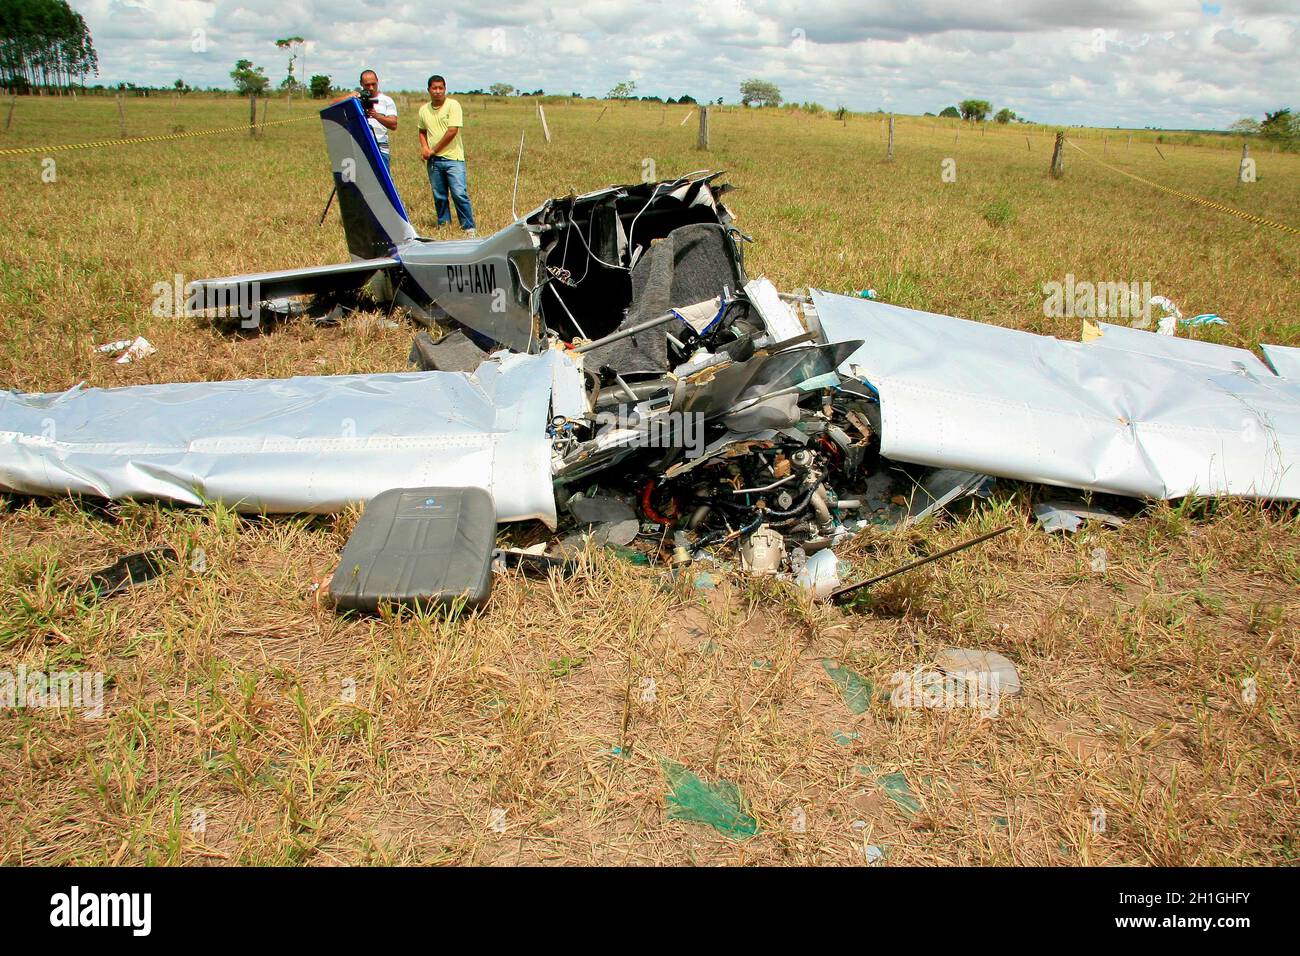 teixeira de freitas, bahia / brazil - march 23, 2009: wreckage of an experimental plane crashing on pasture in the rural area of the city of Teixeira Stock Photo